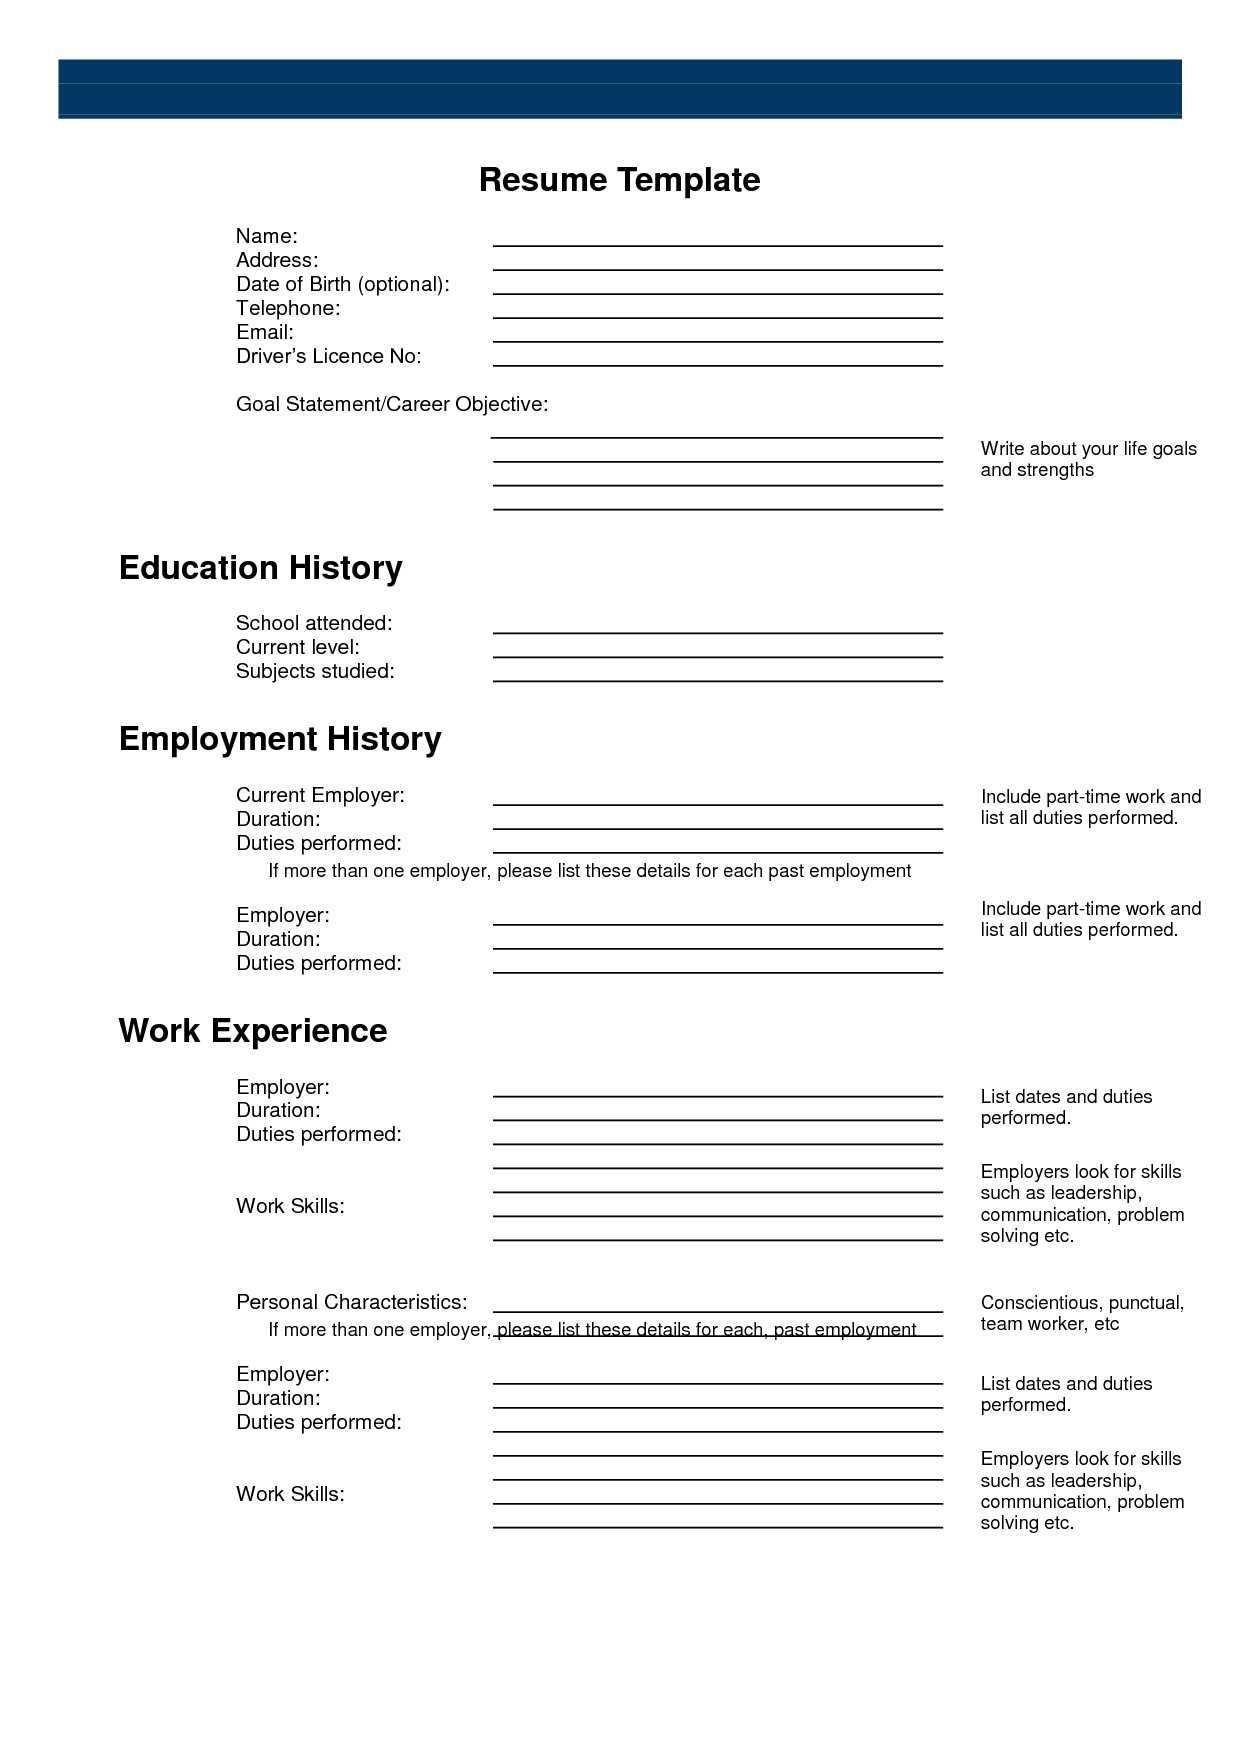 Pinanishfeds On Resumes | Free Printable Resume, Free Printable - Free Printable Resume